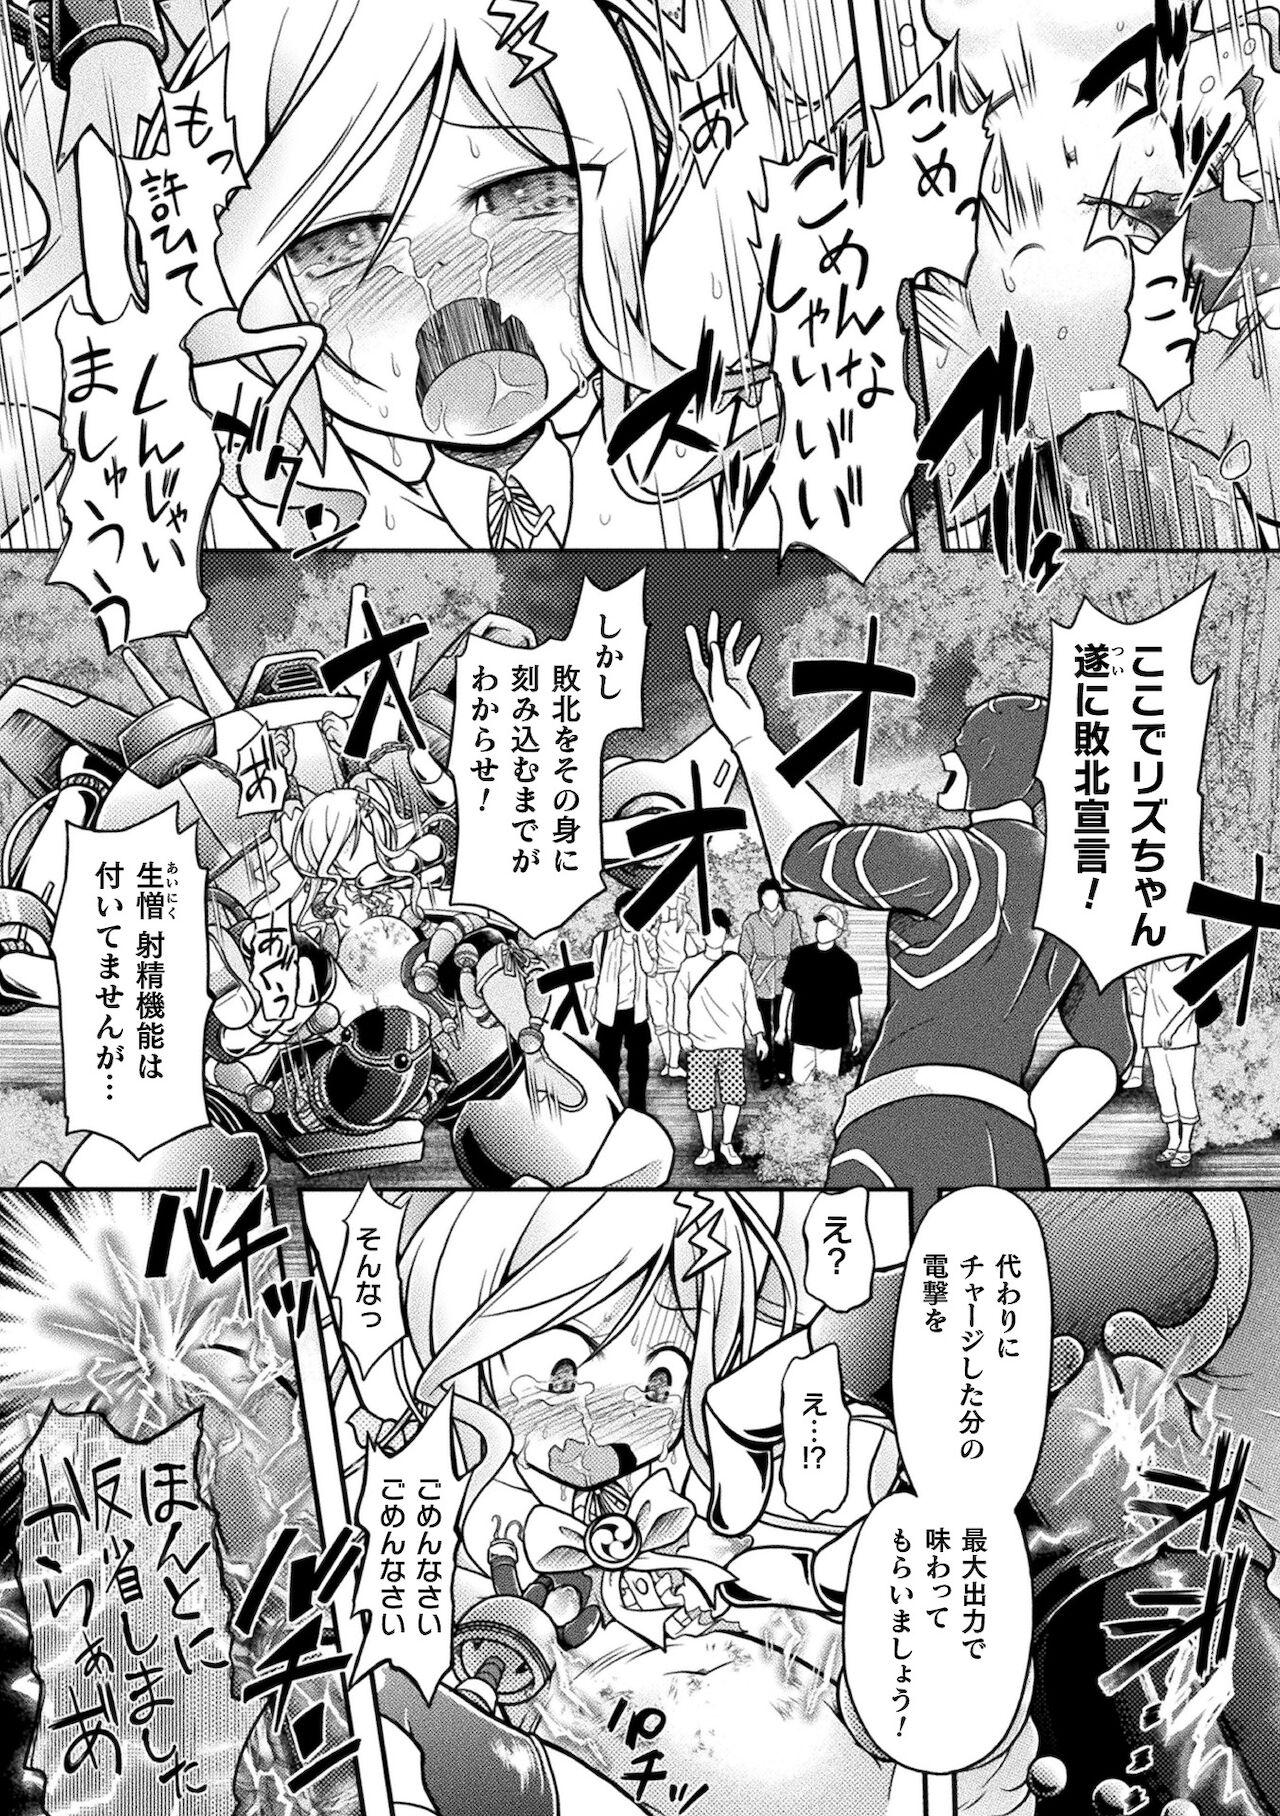 2D Comic Magazine Mesugaki Henshin Heroine Kikaikan Seisai Hijou no Wakarase Machine de Renzoku Loli Acme Vol. 2 38